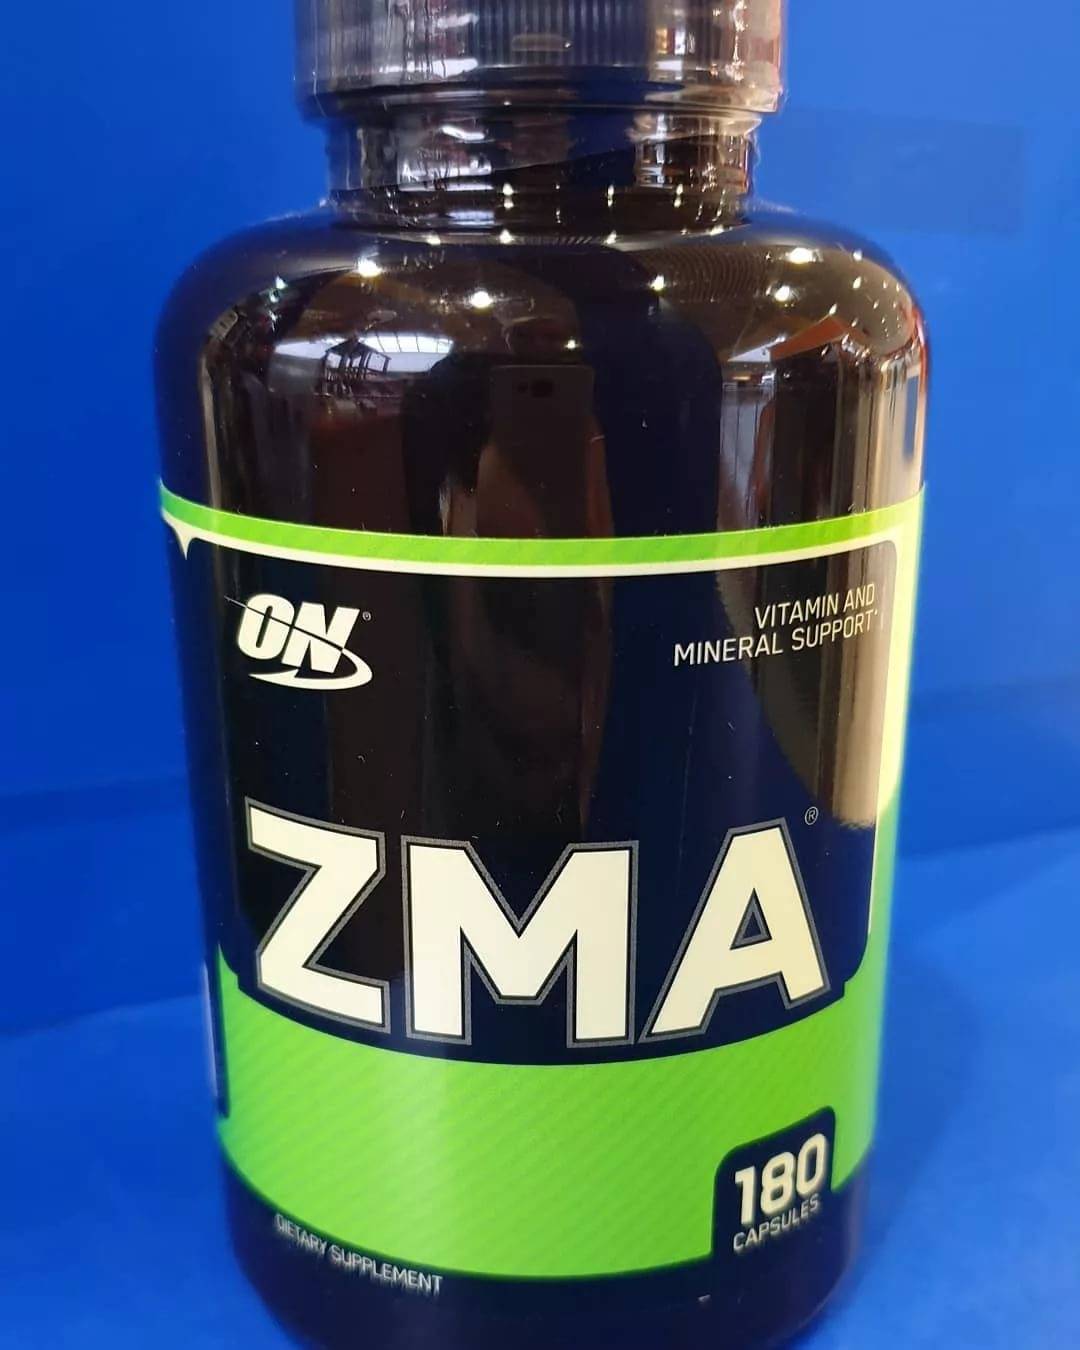 Zma от optimum nutrition: как принимать, эффекты от приема